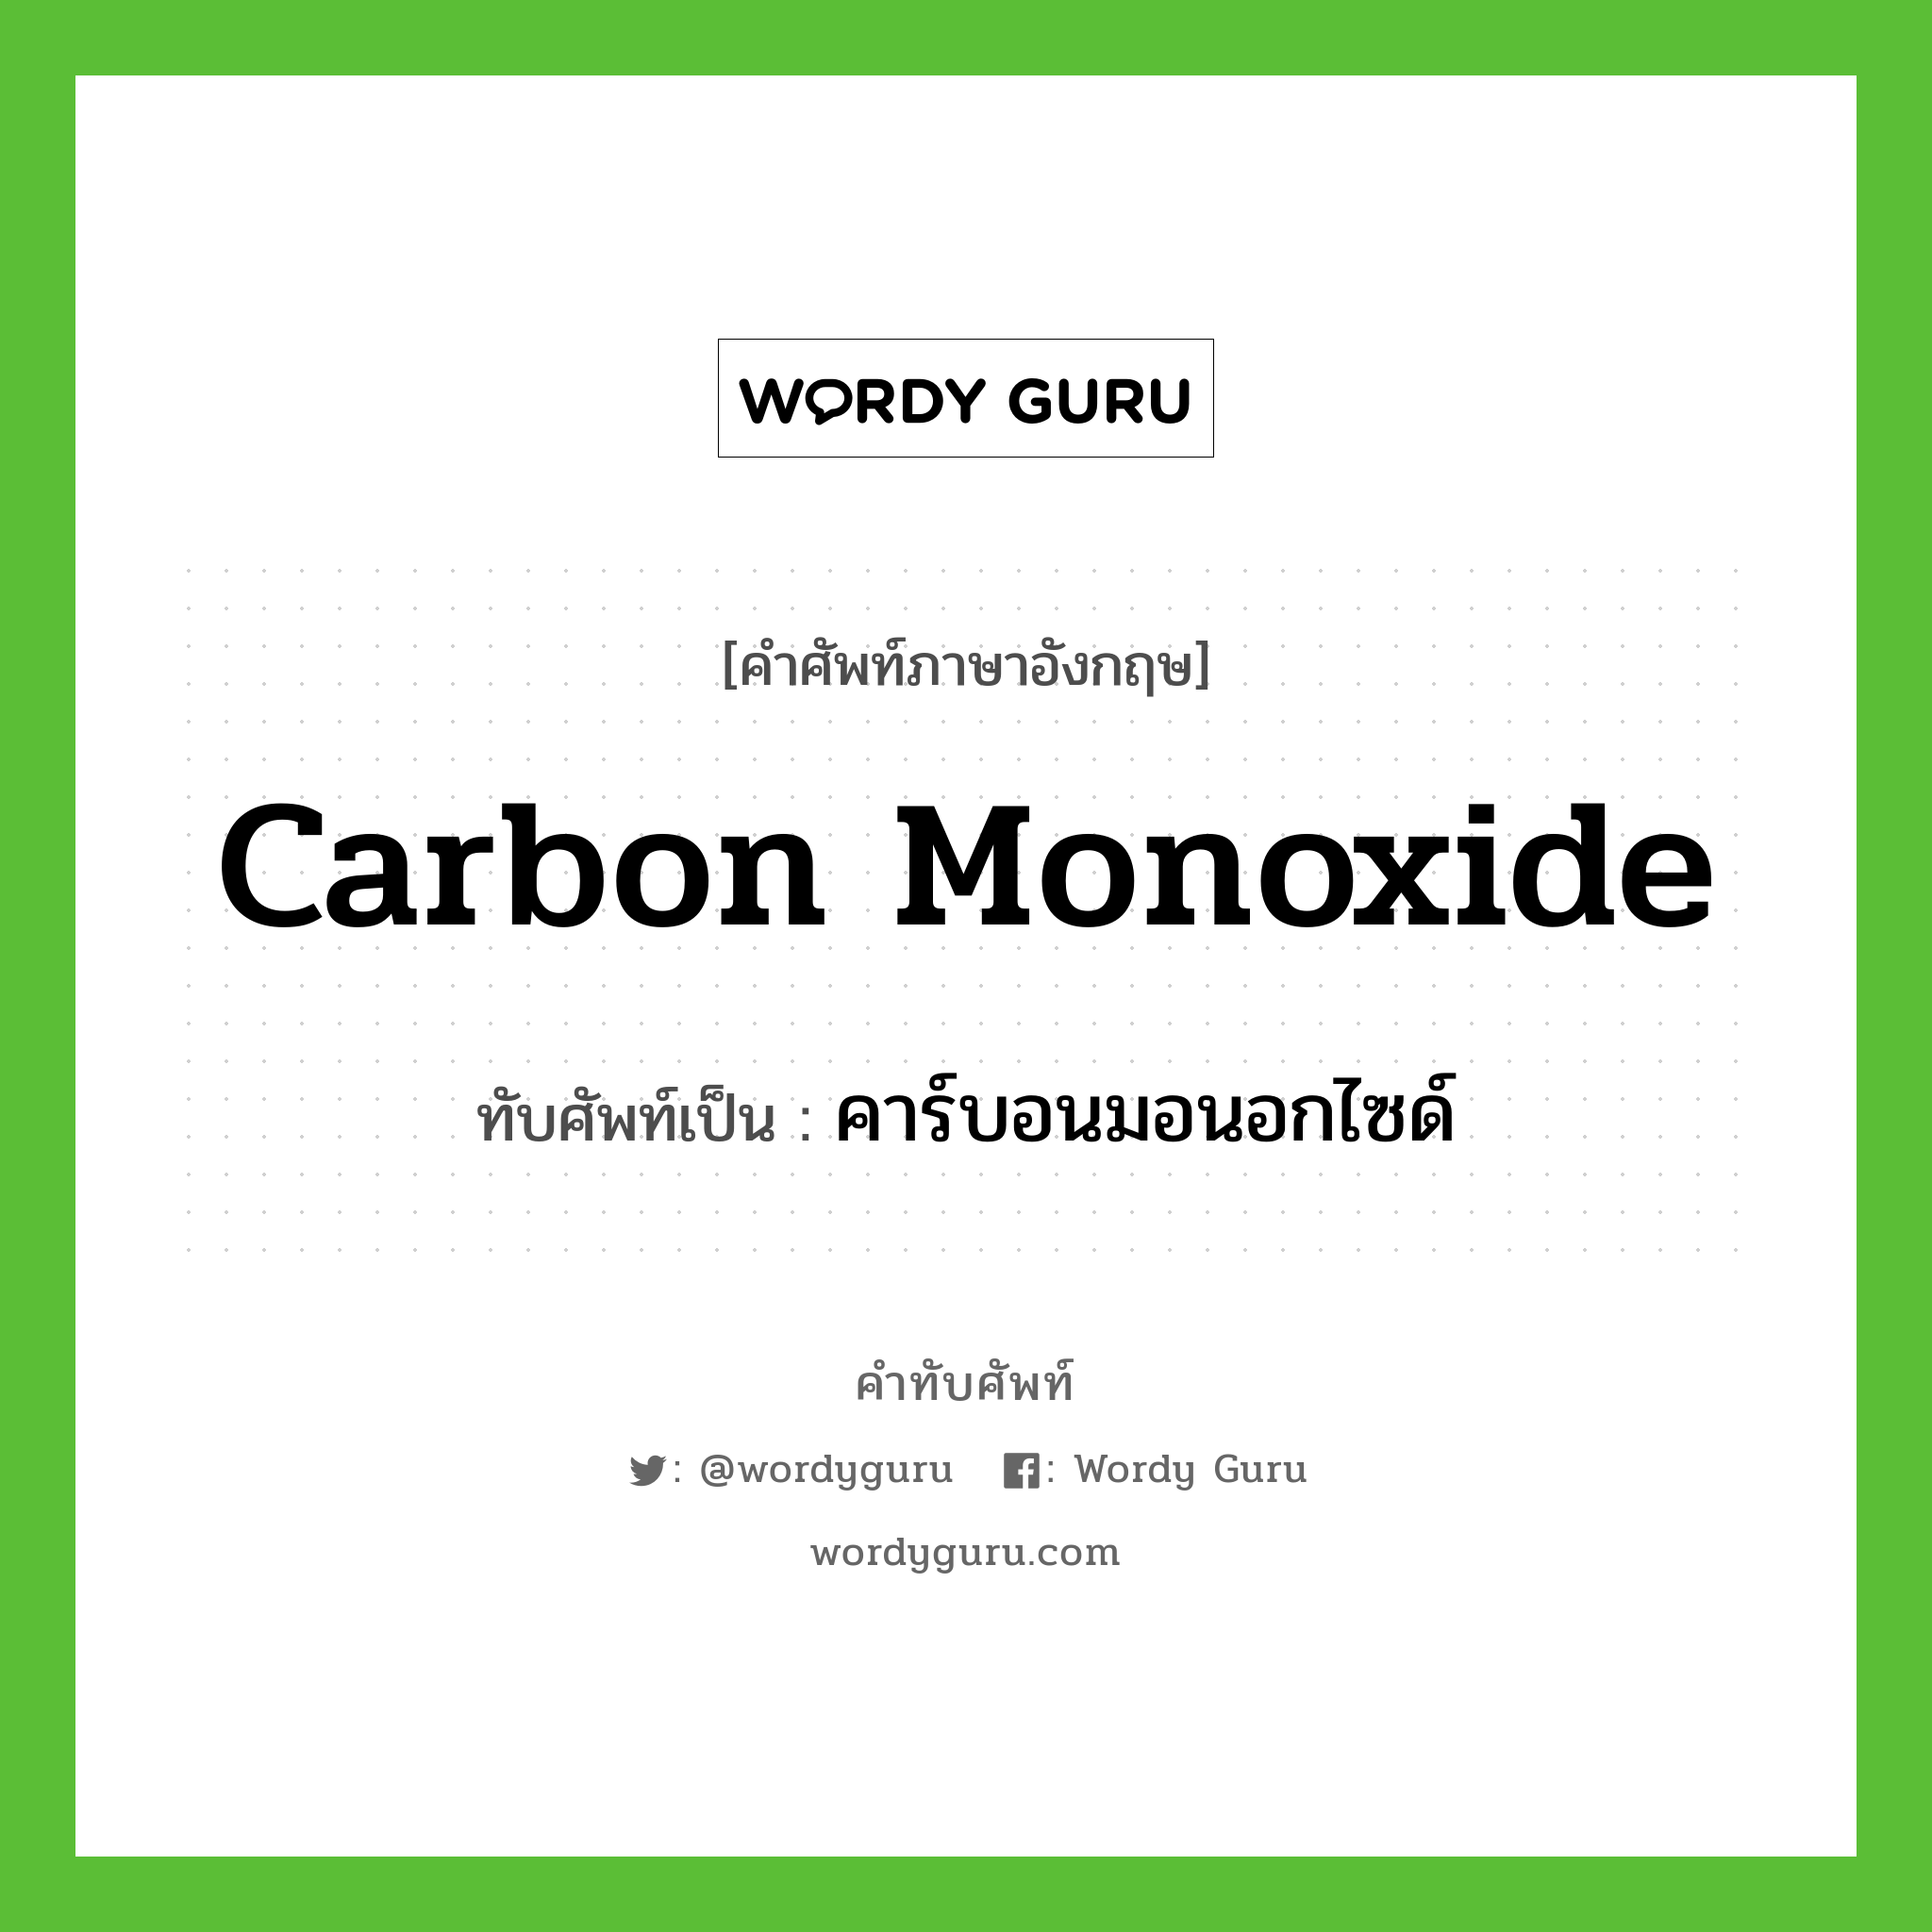 คาร์บอนมอนอกไซด์ เขียนอย่างไร?, คำศัพท์ภาษาอังกฤษ คาร์บอนมอนอกไซด์ ทับศัพท์เป็น carbon monoxide